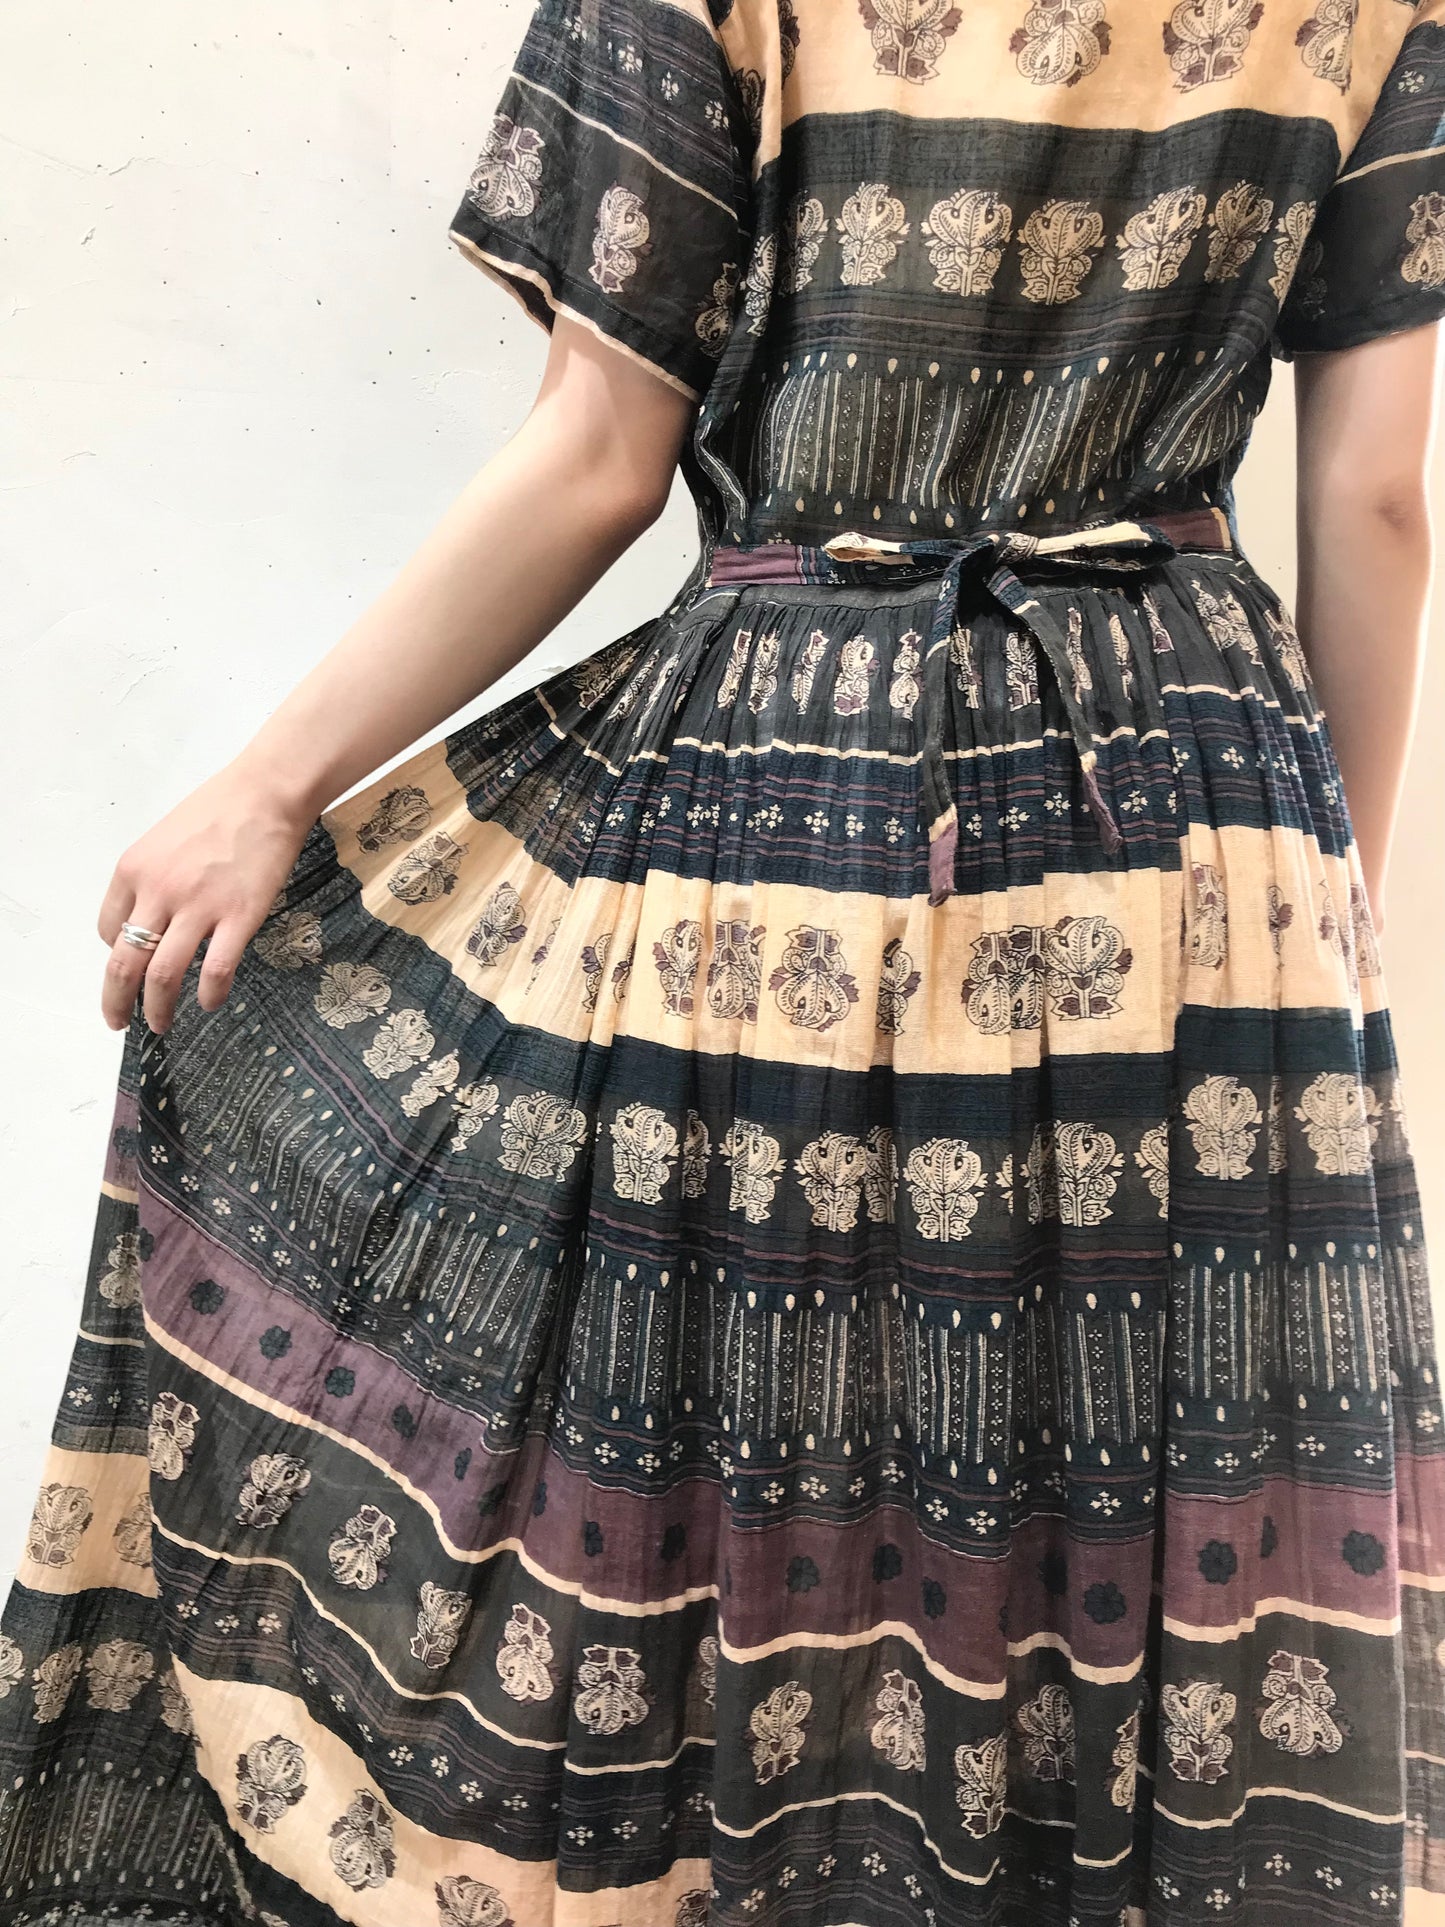 Vintage Cotton Dress [G24605]